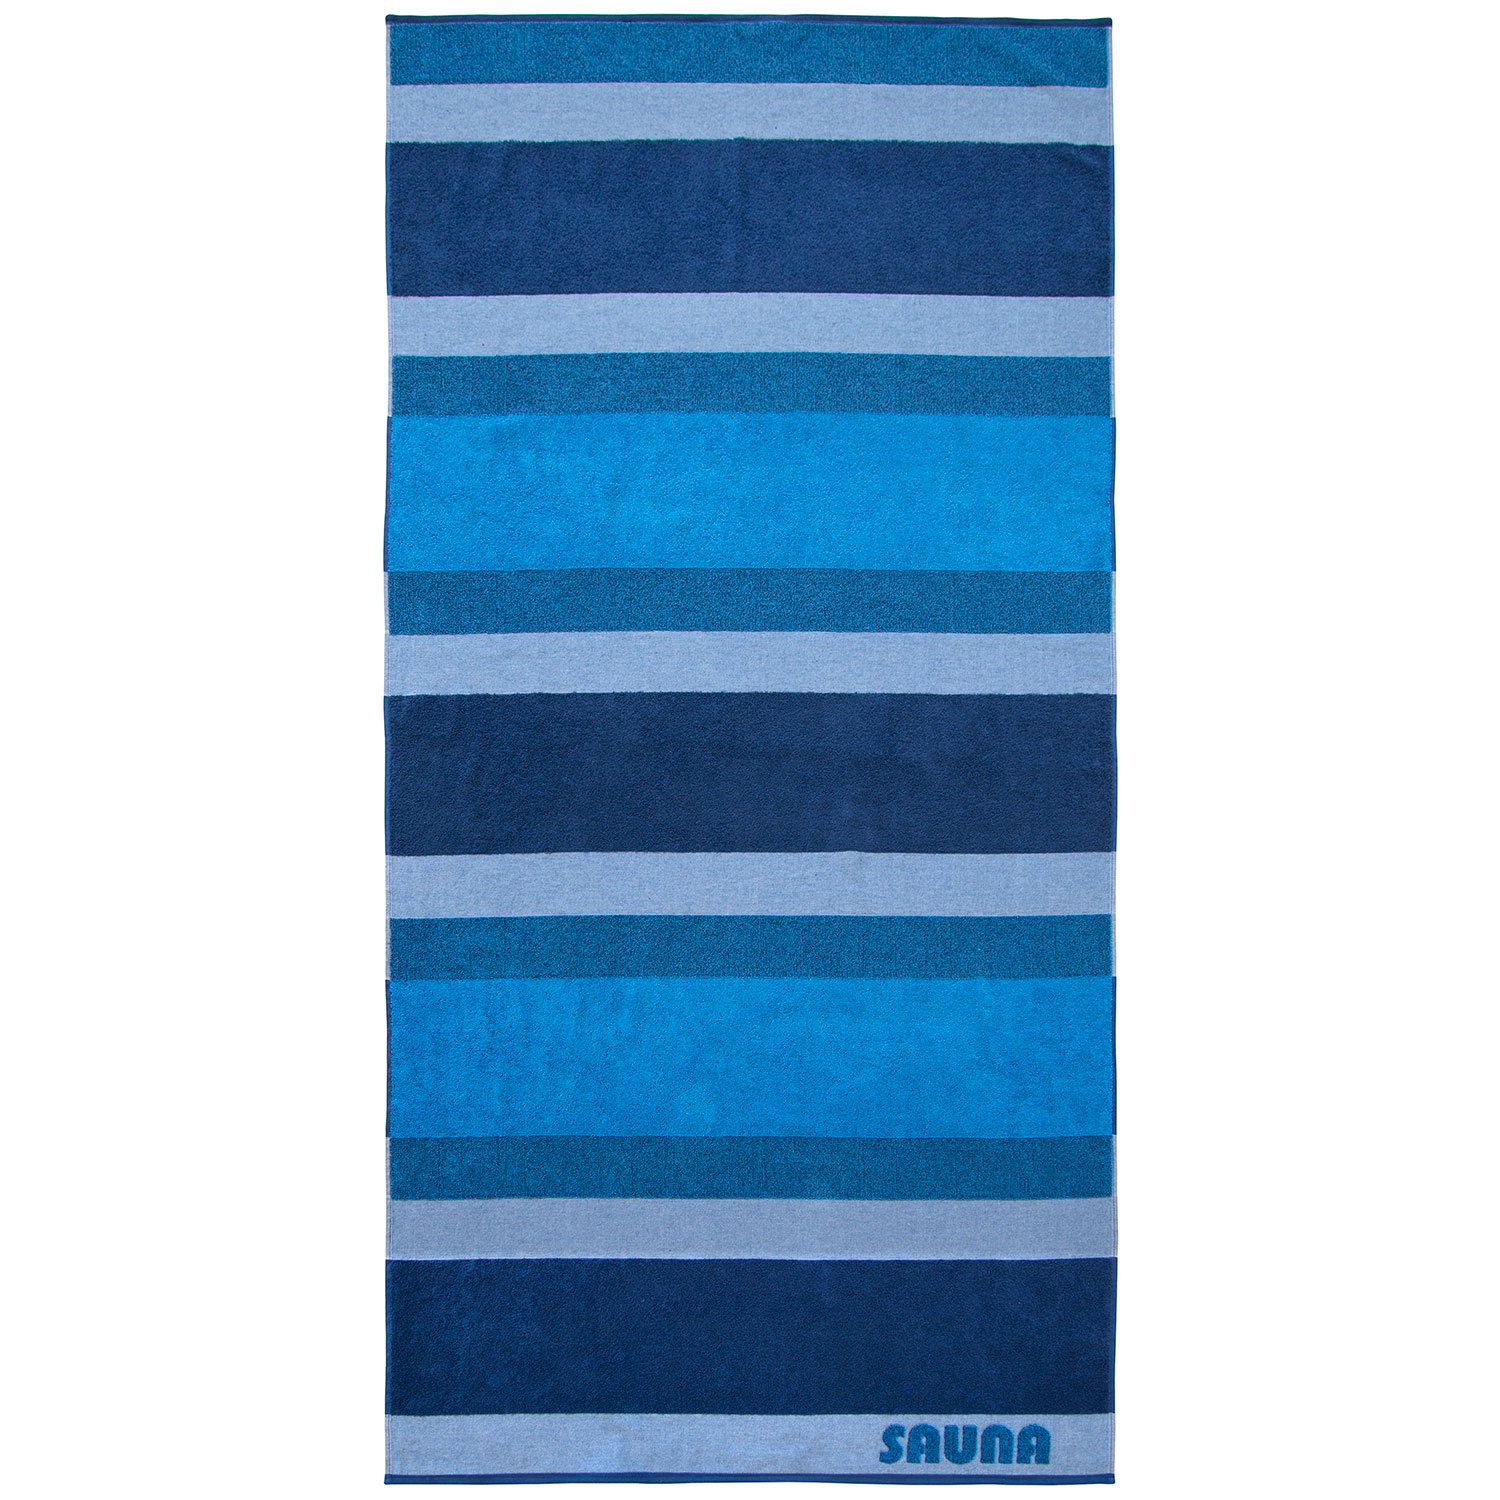 Baumwolle, Sauna, Stripe, Streifen, blau, silber, grau | Dyckhoff GmbH